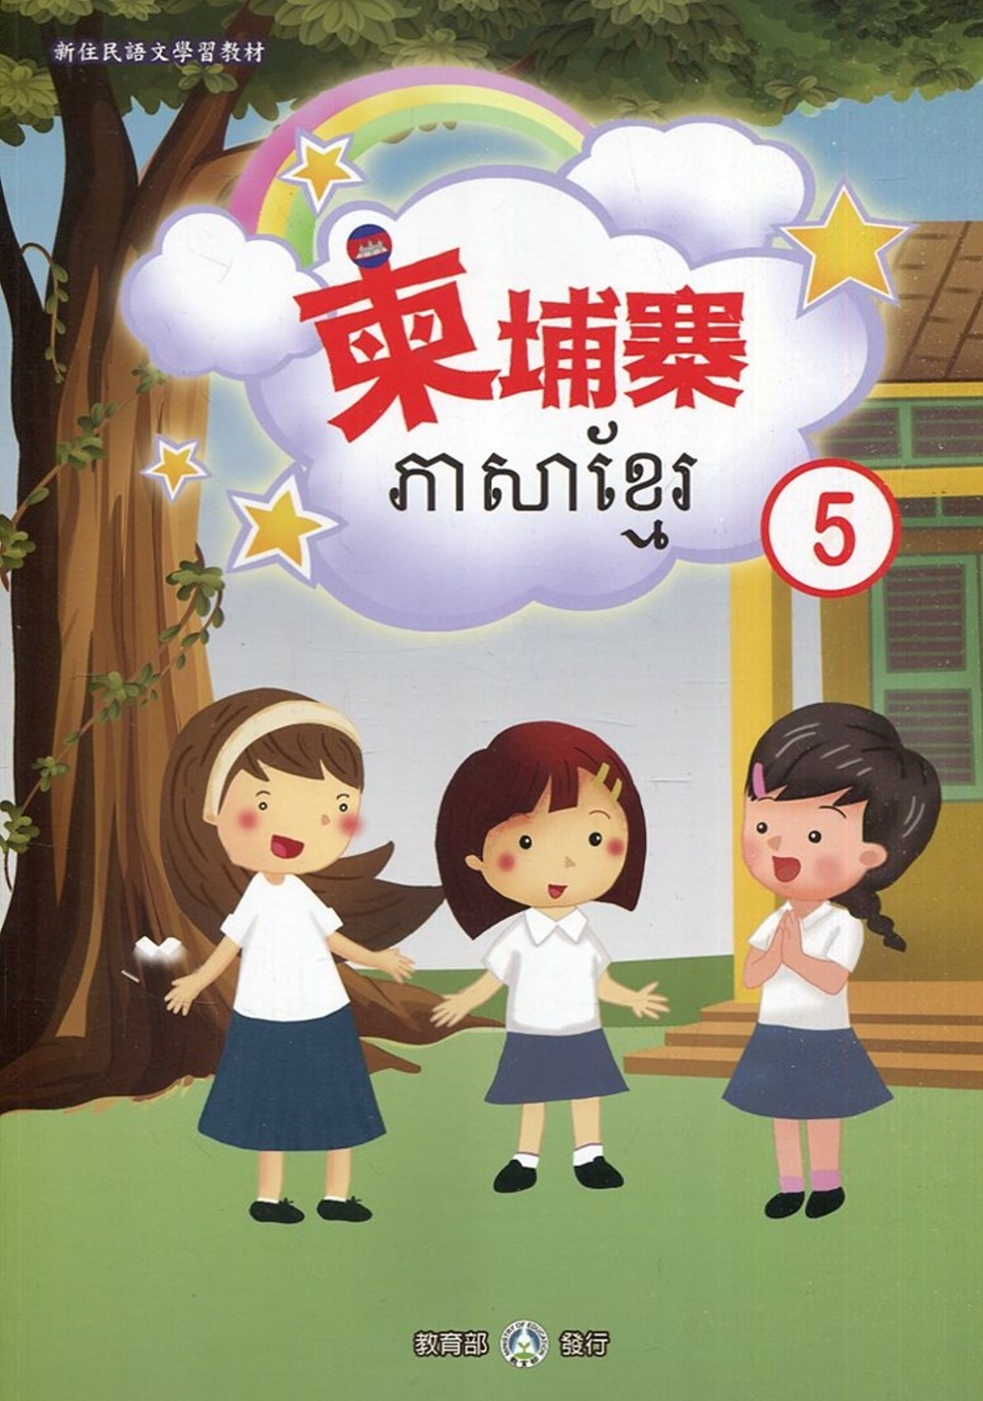 新住民語文學習教材柬埔寨第5冊(二版)